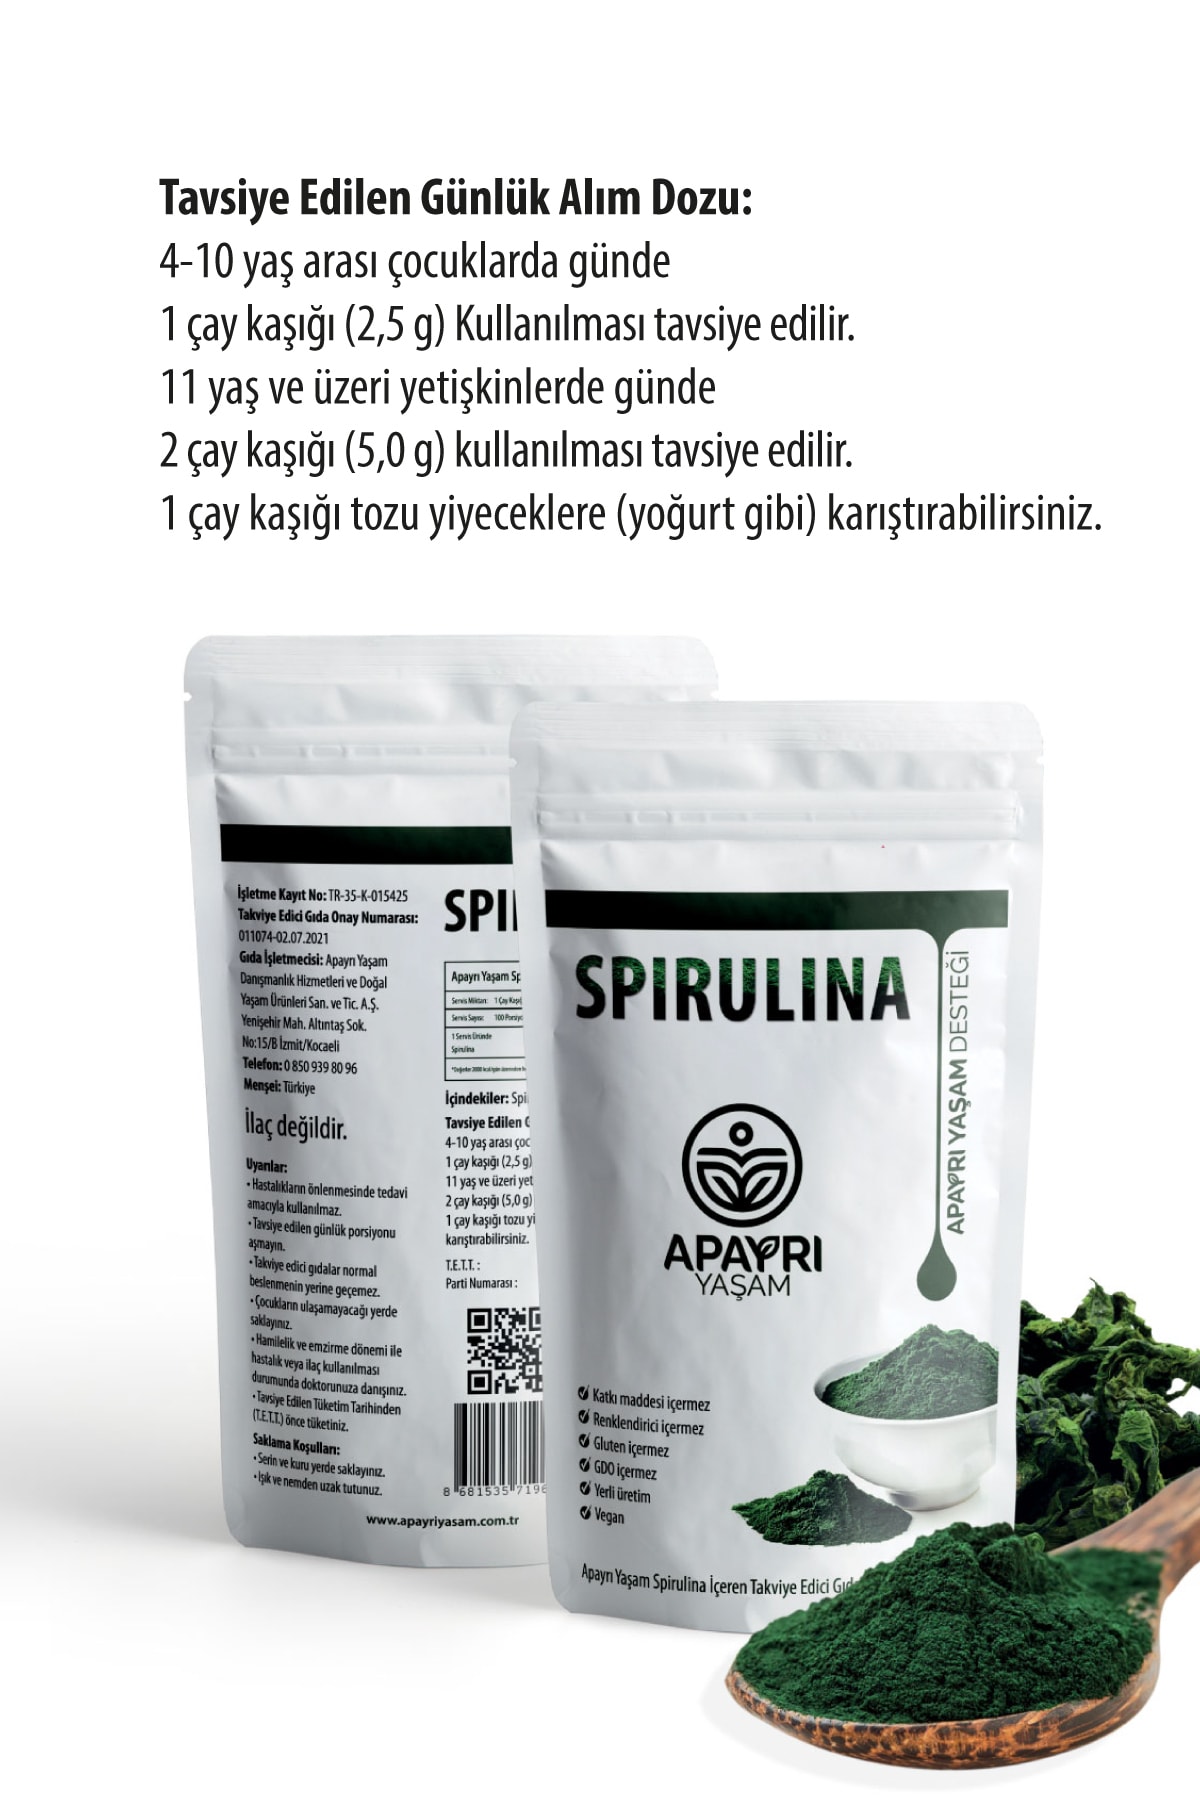 ApAyrı Yaşam Spirulina Takviye Edici Gıda Toz 250gr PG7351